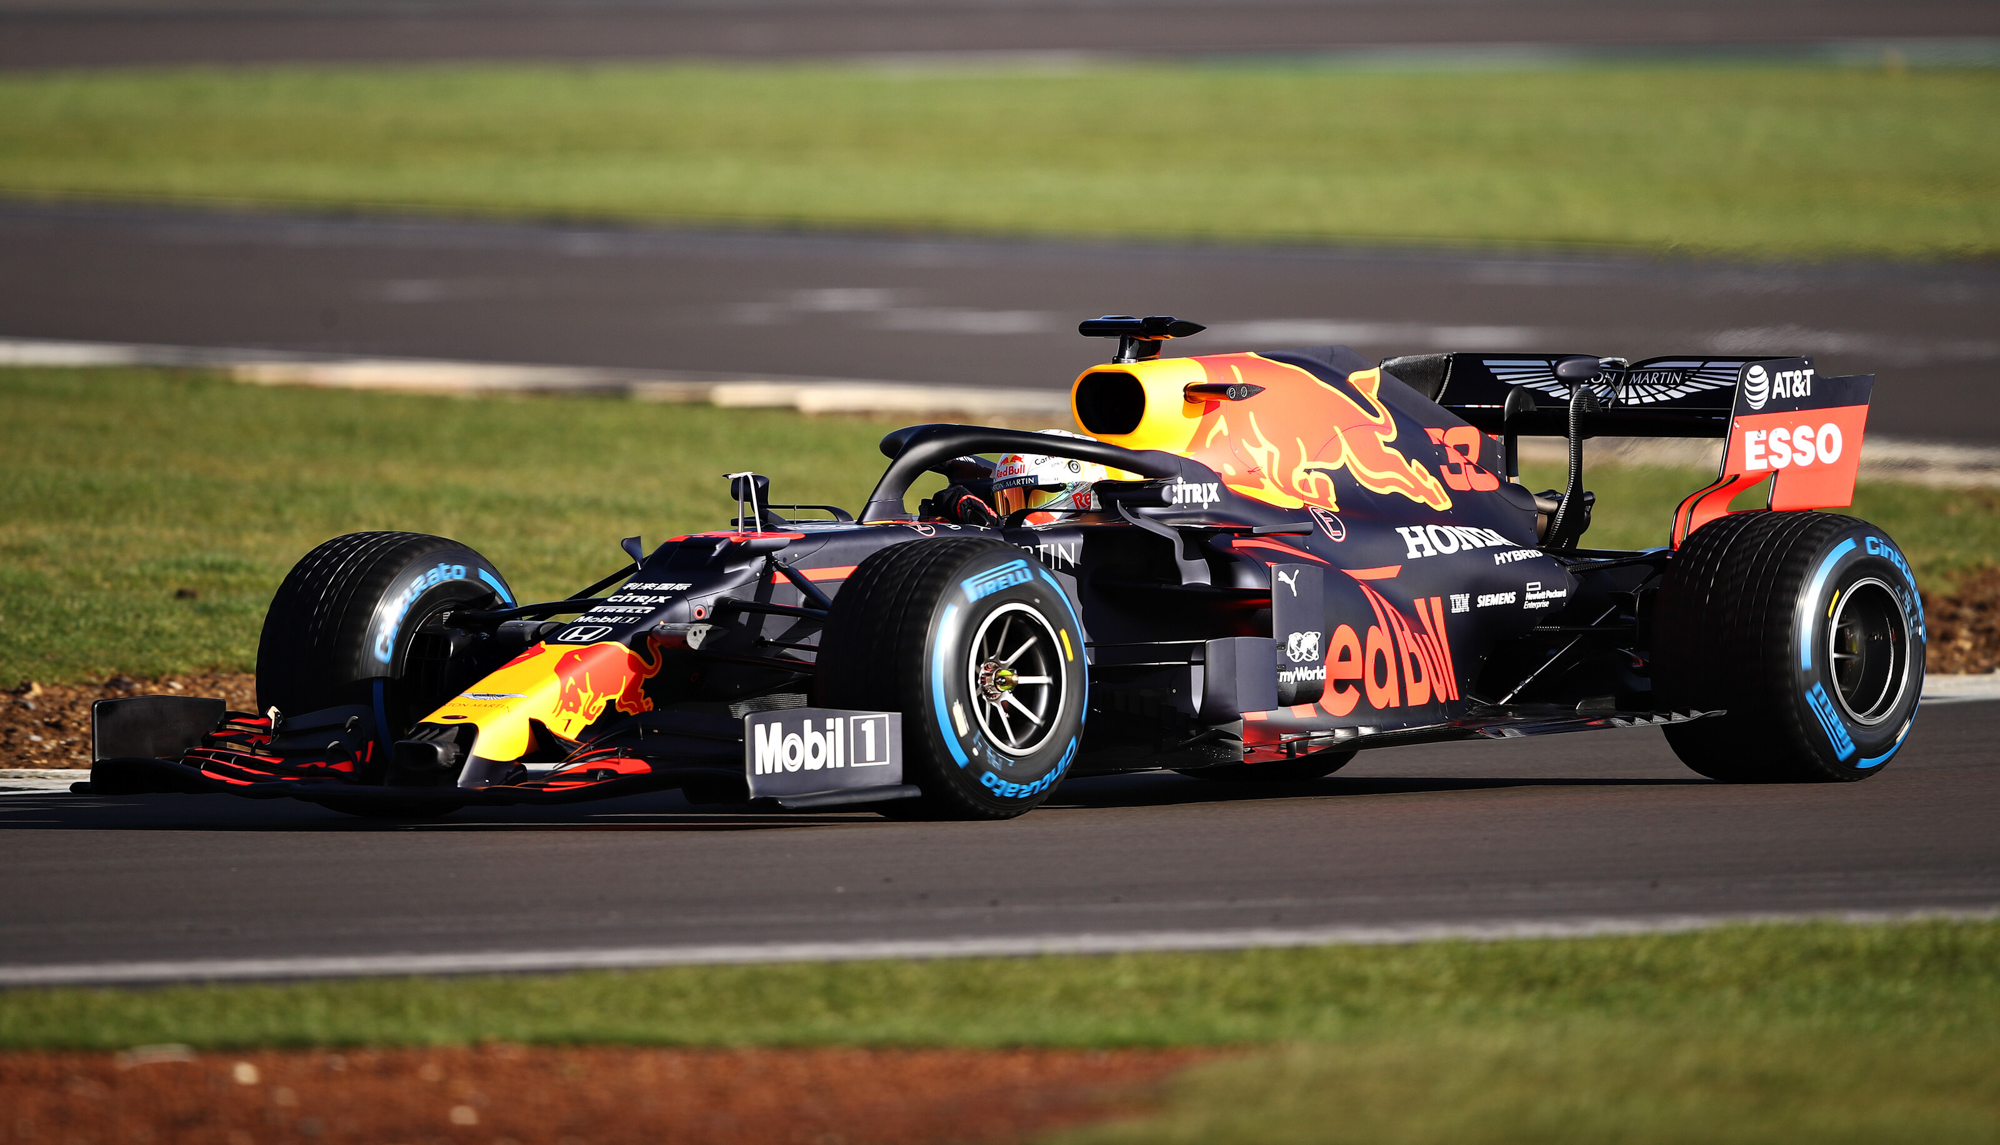 F1 Red Bull sprawdził już samochód na torze. Zespół